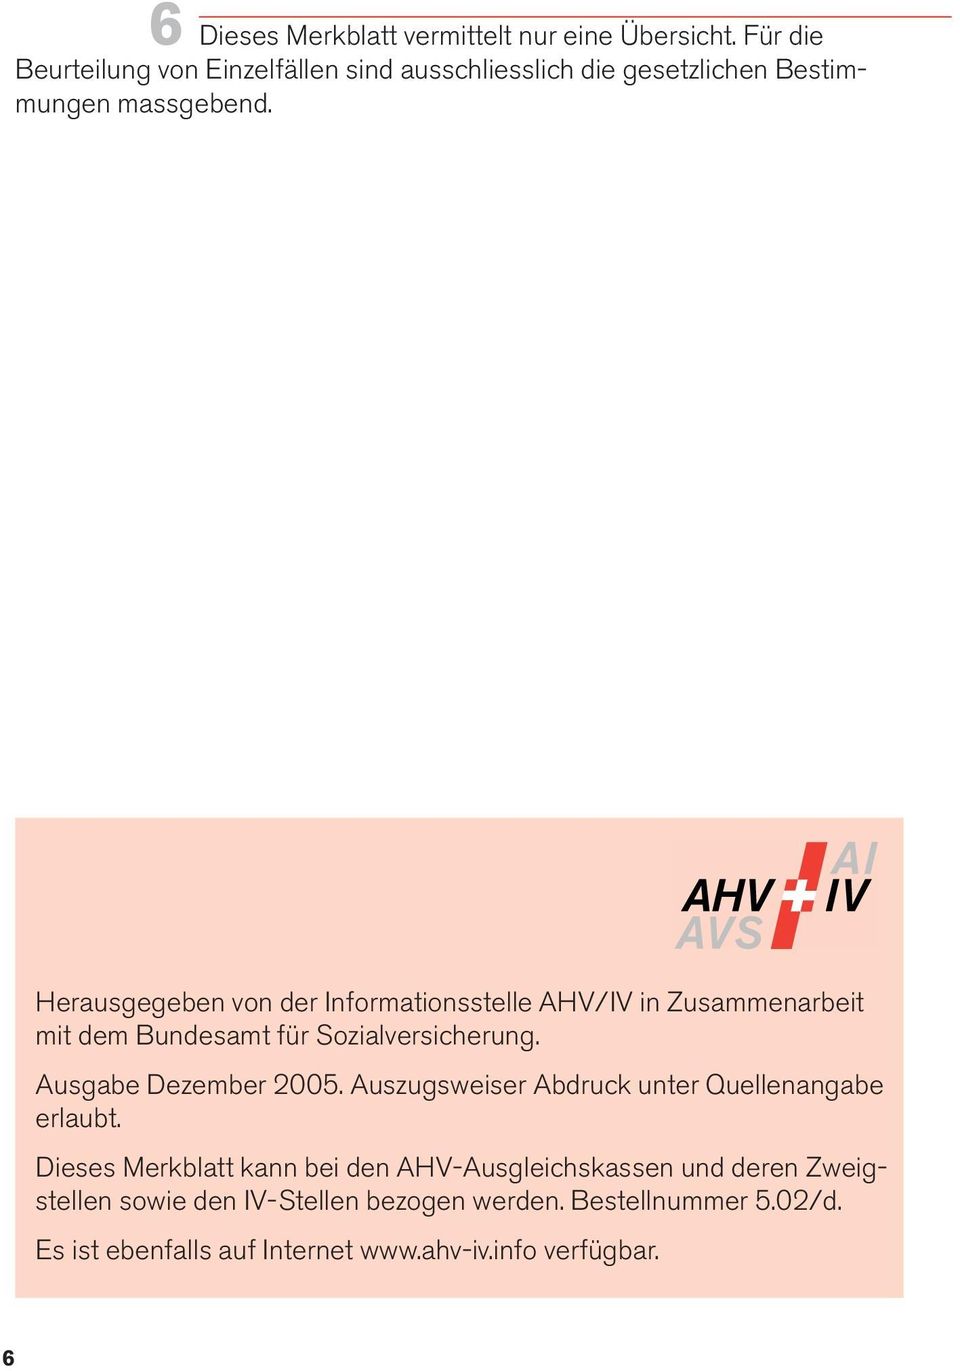 Herausgegeben von der Informationsstelle AHV/IV in Zusammenarbeit mit dem Bundesamt für Sozialversicherung. Ausgabe Dezember 2005.